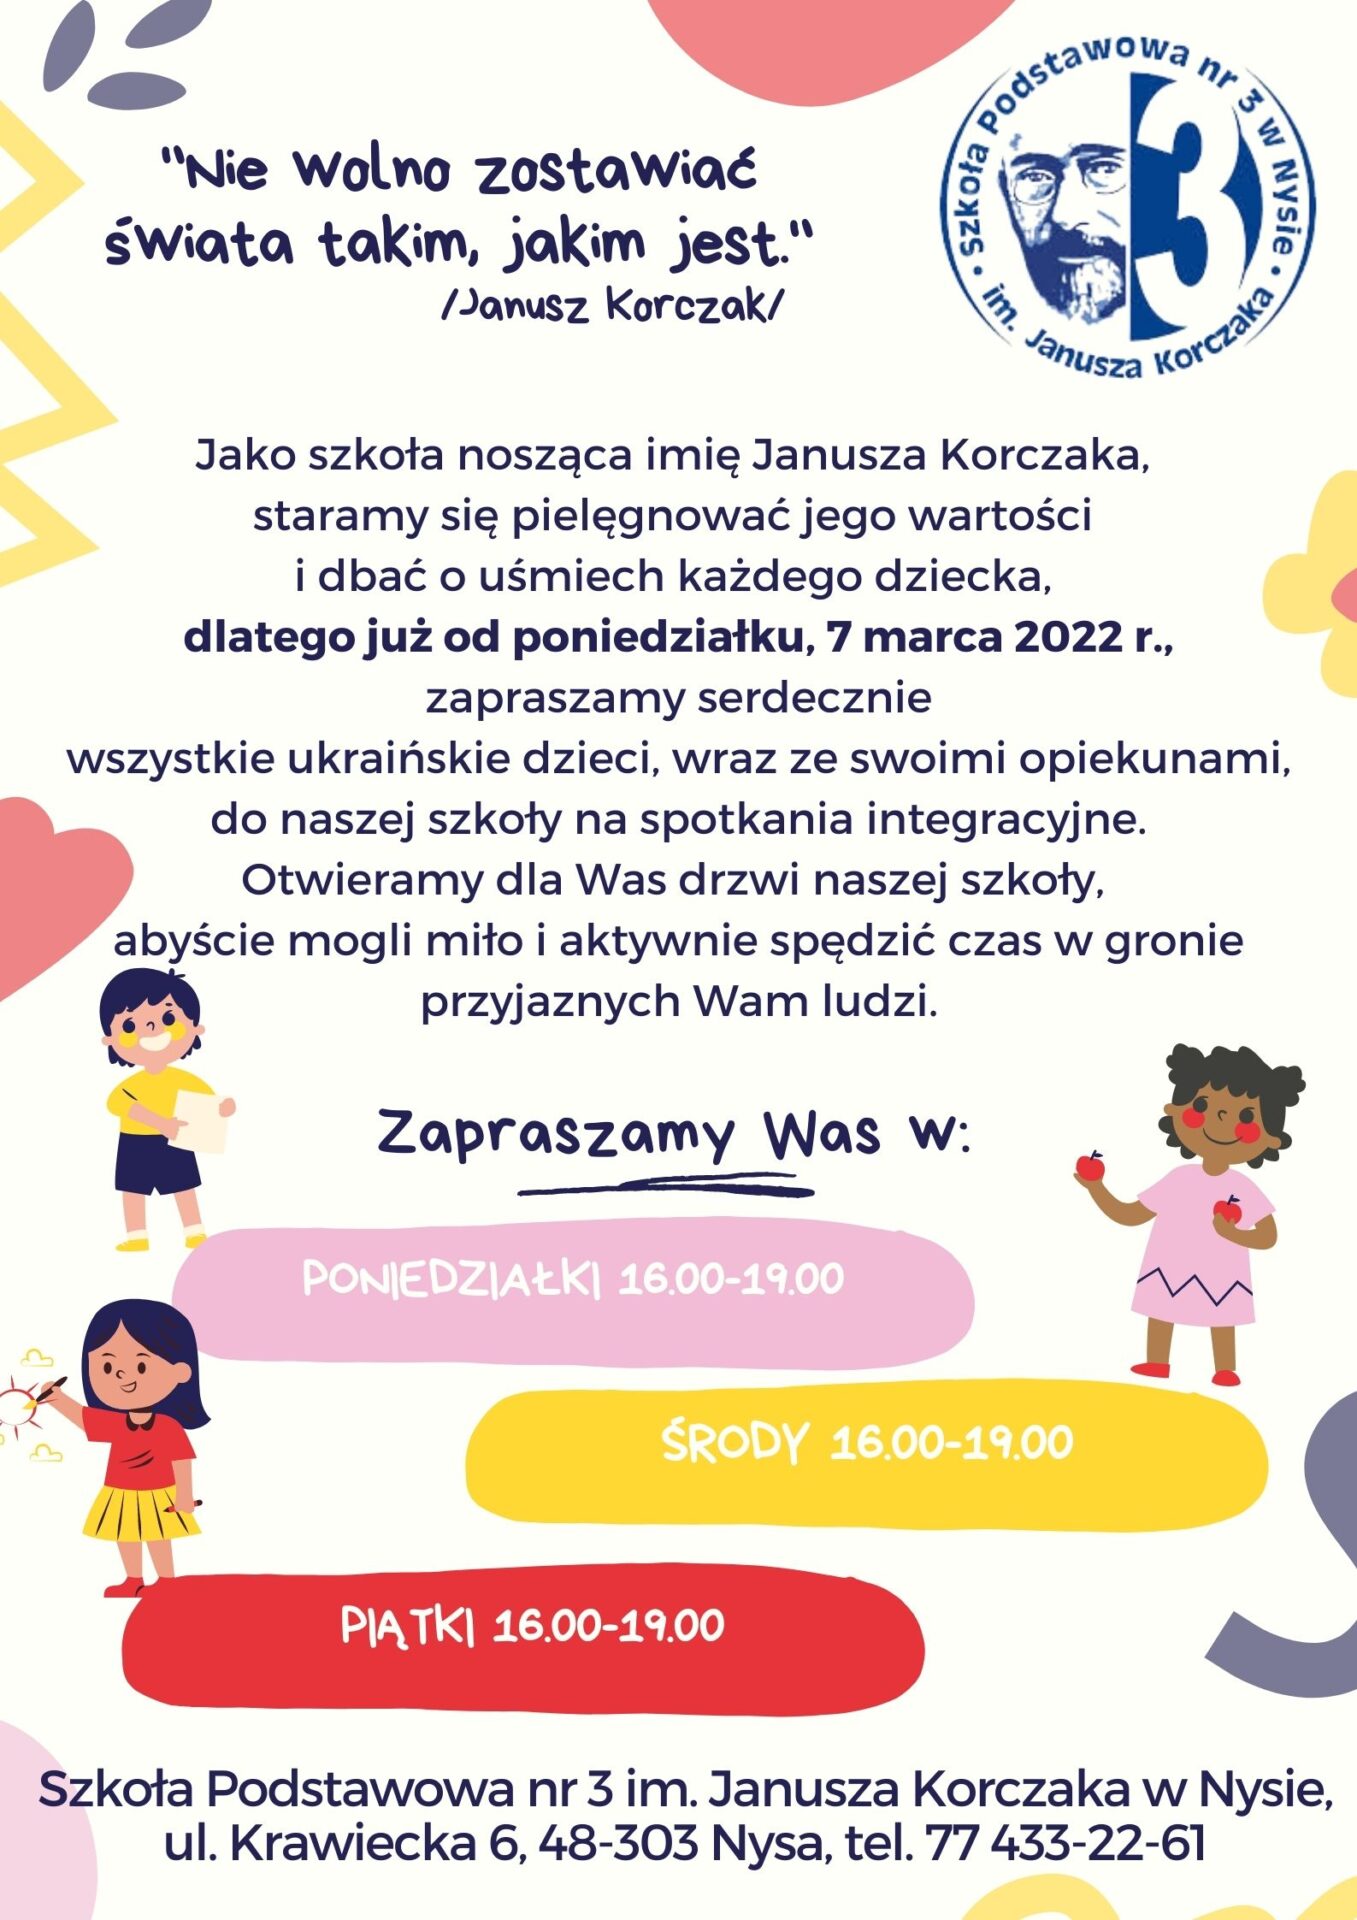 SP 3 w Nysie zaprasza ukraińskie dzieci na spotkania integracyjne